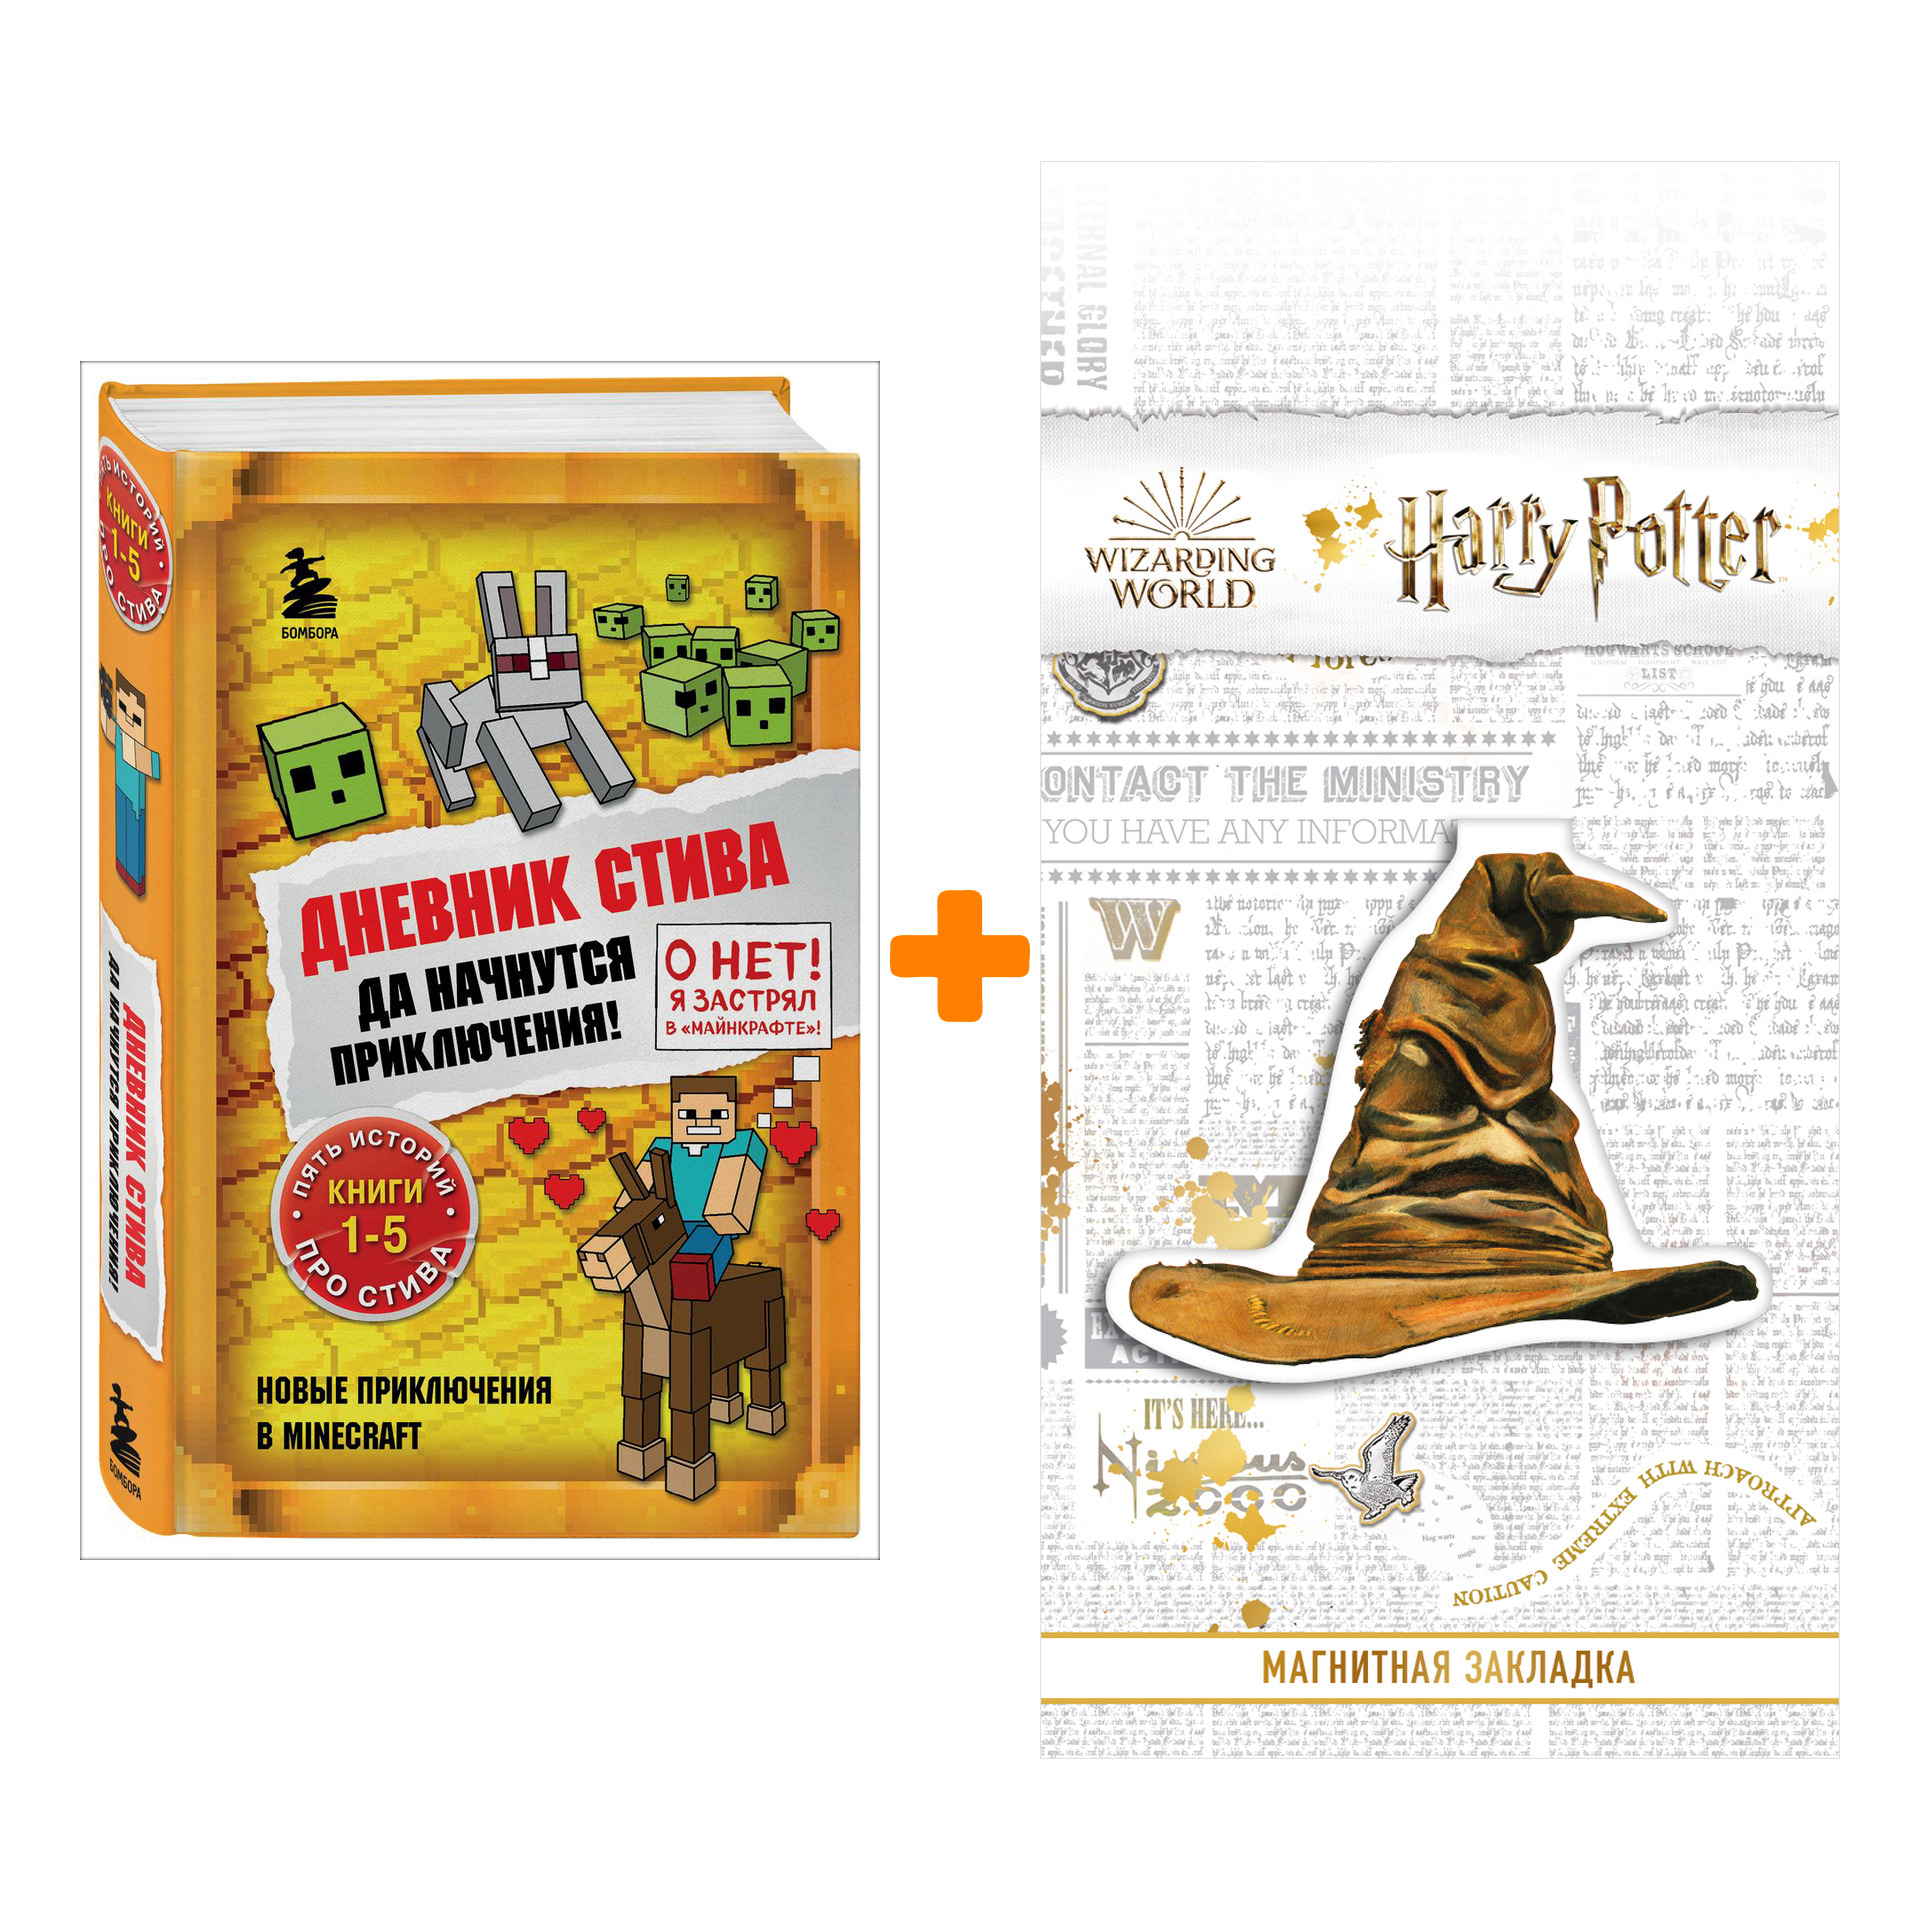 Набор Дневник Стива. Да начнутся приключения! Книги 1-5 + Закладка Harry Potter Распределяющая шляпа магнитная